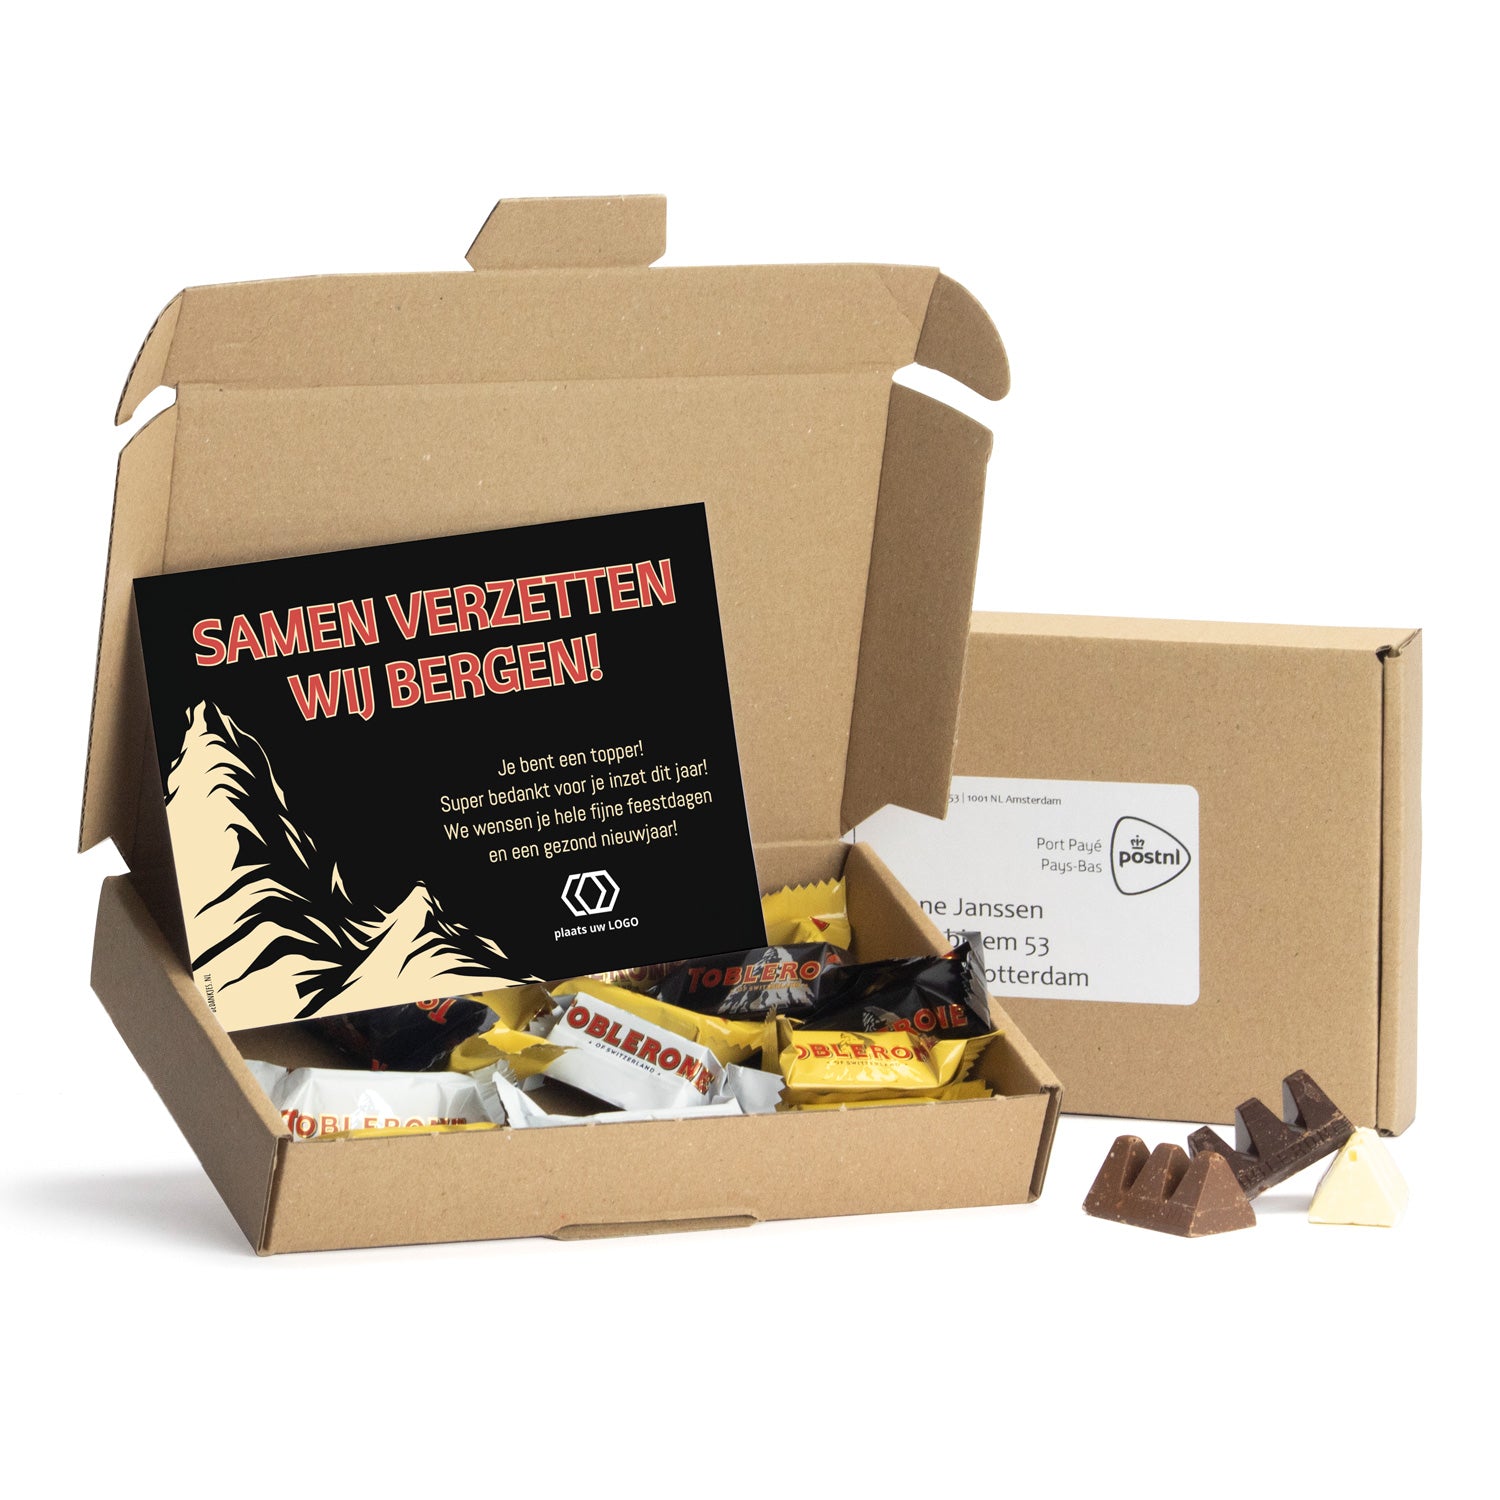 Maildoosje met Toblerone chocolade - Kerst - Bedankjes.nl